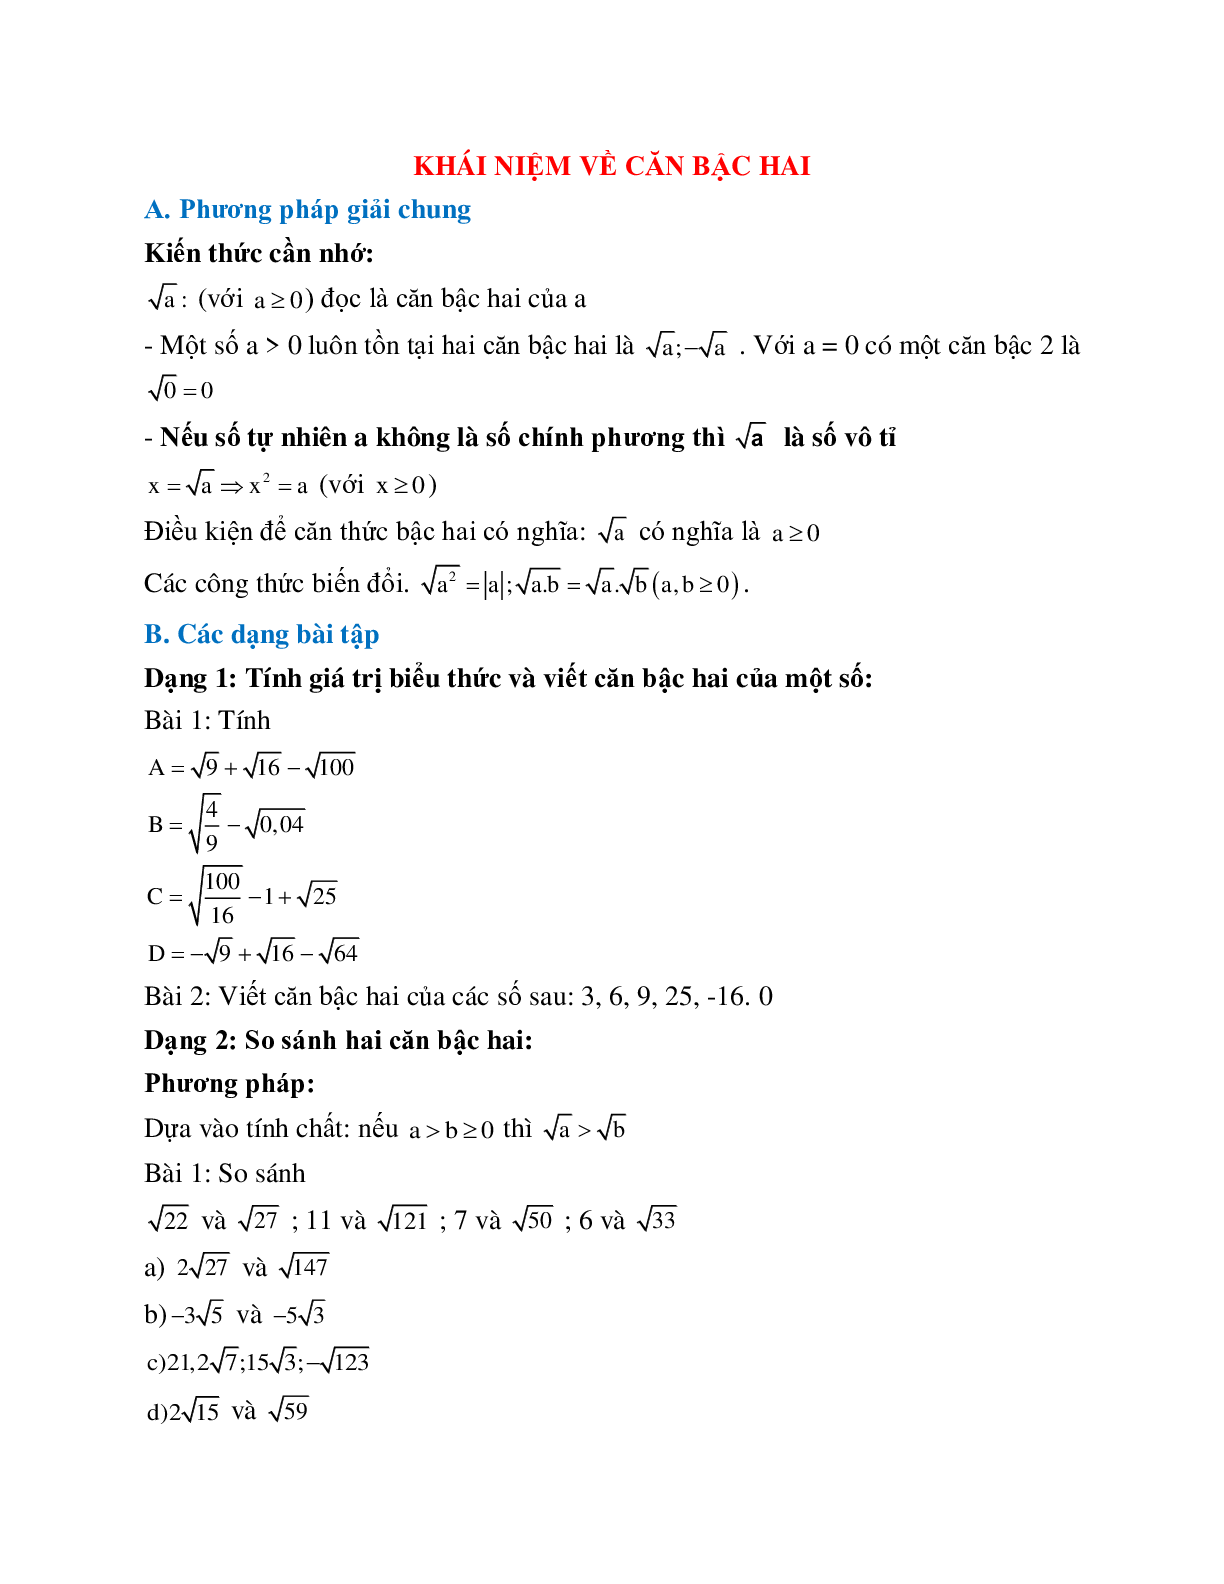 Cách giải Khái niệm căn bậc hai (trang 1)